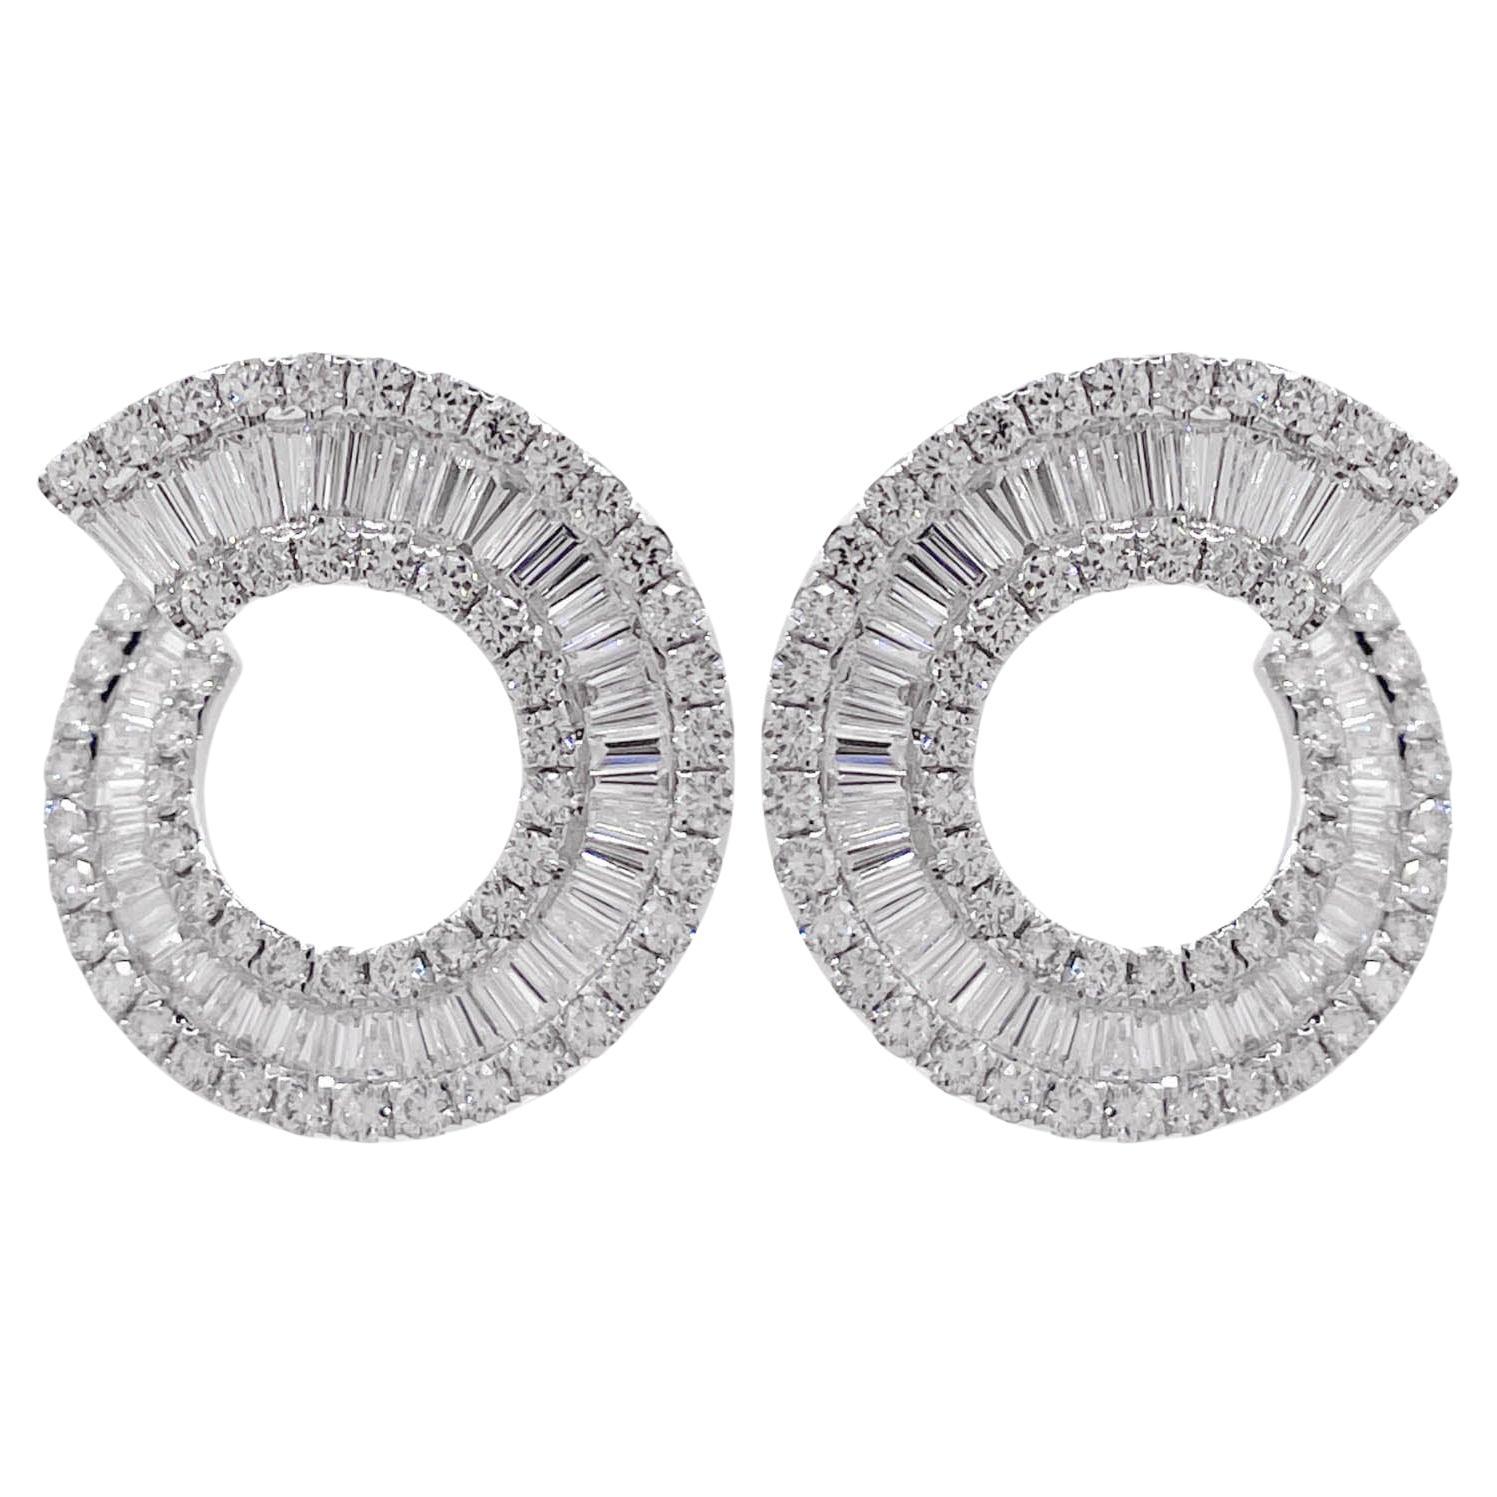 Jay Feder 18k White Gold Diamond C Shaped Earrings For Sale